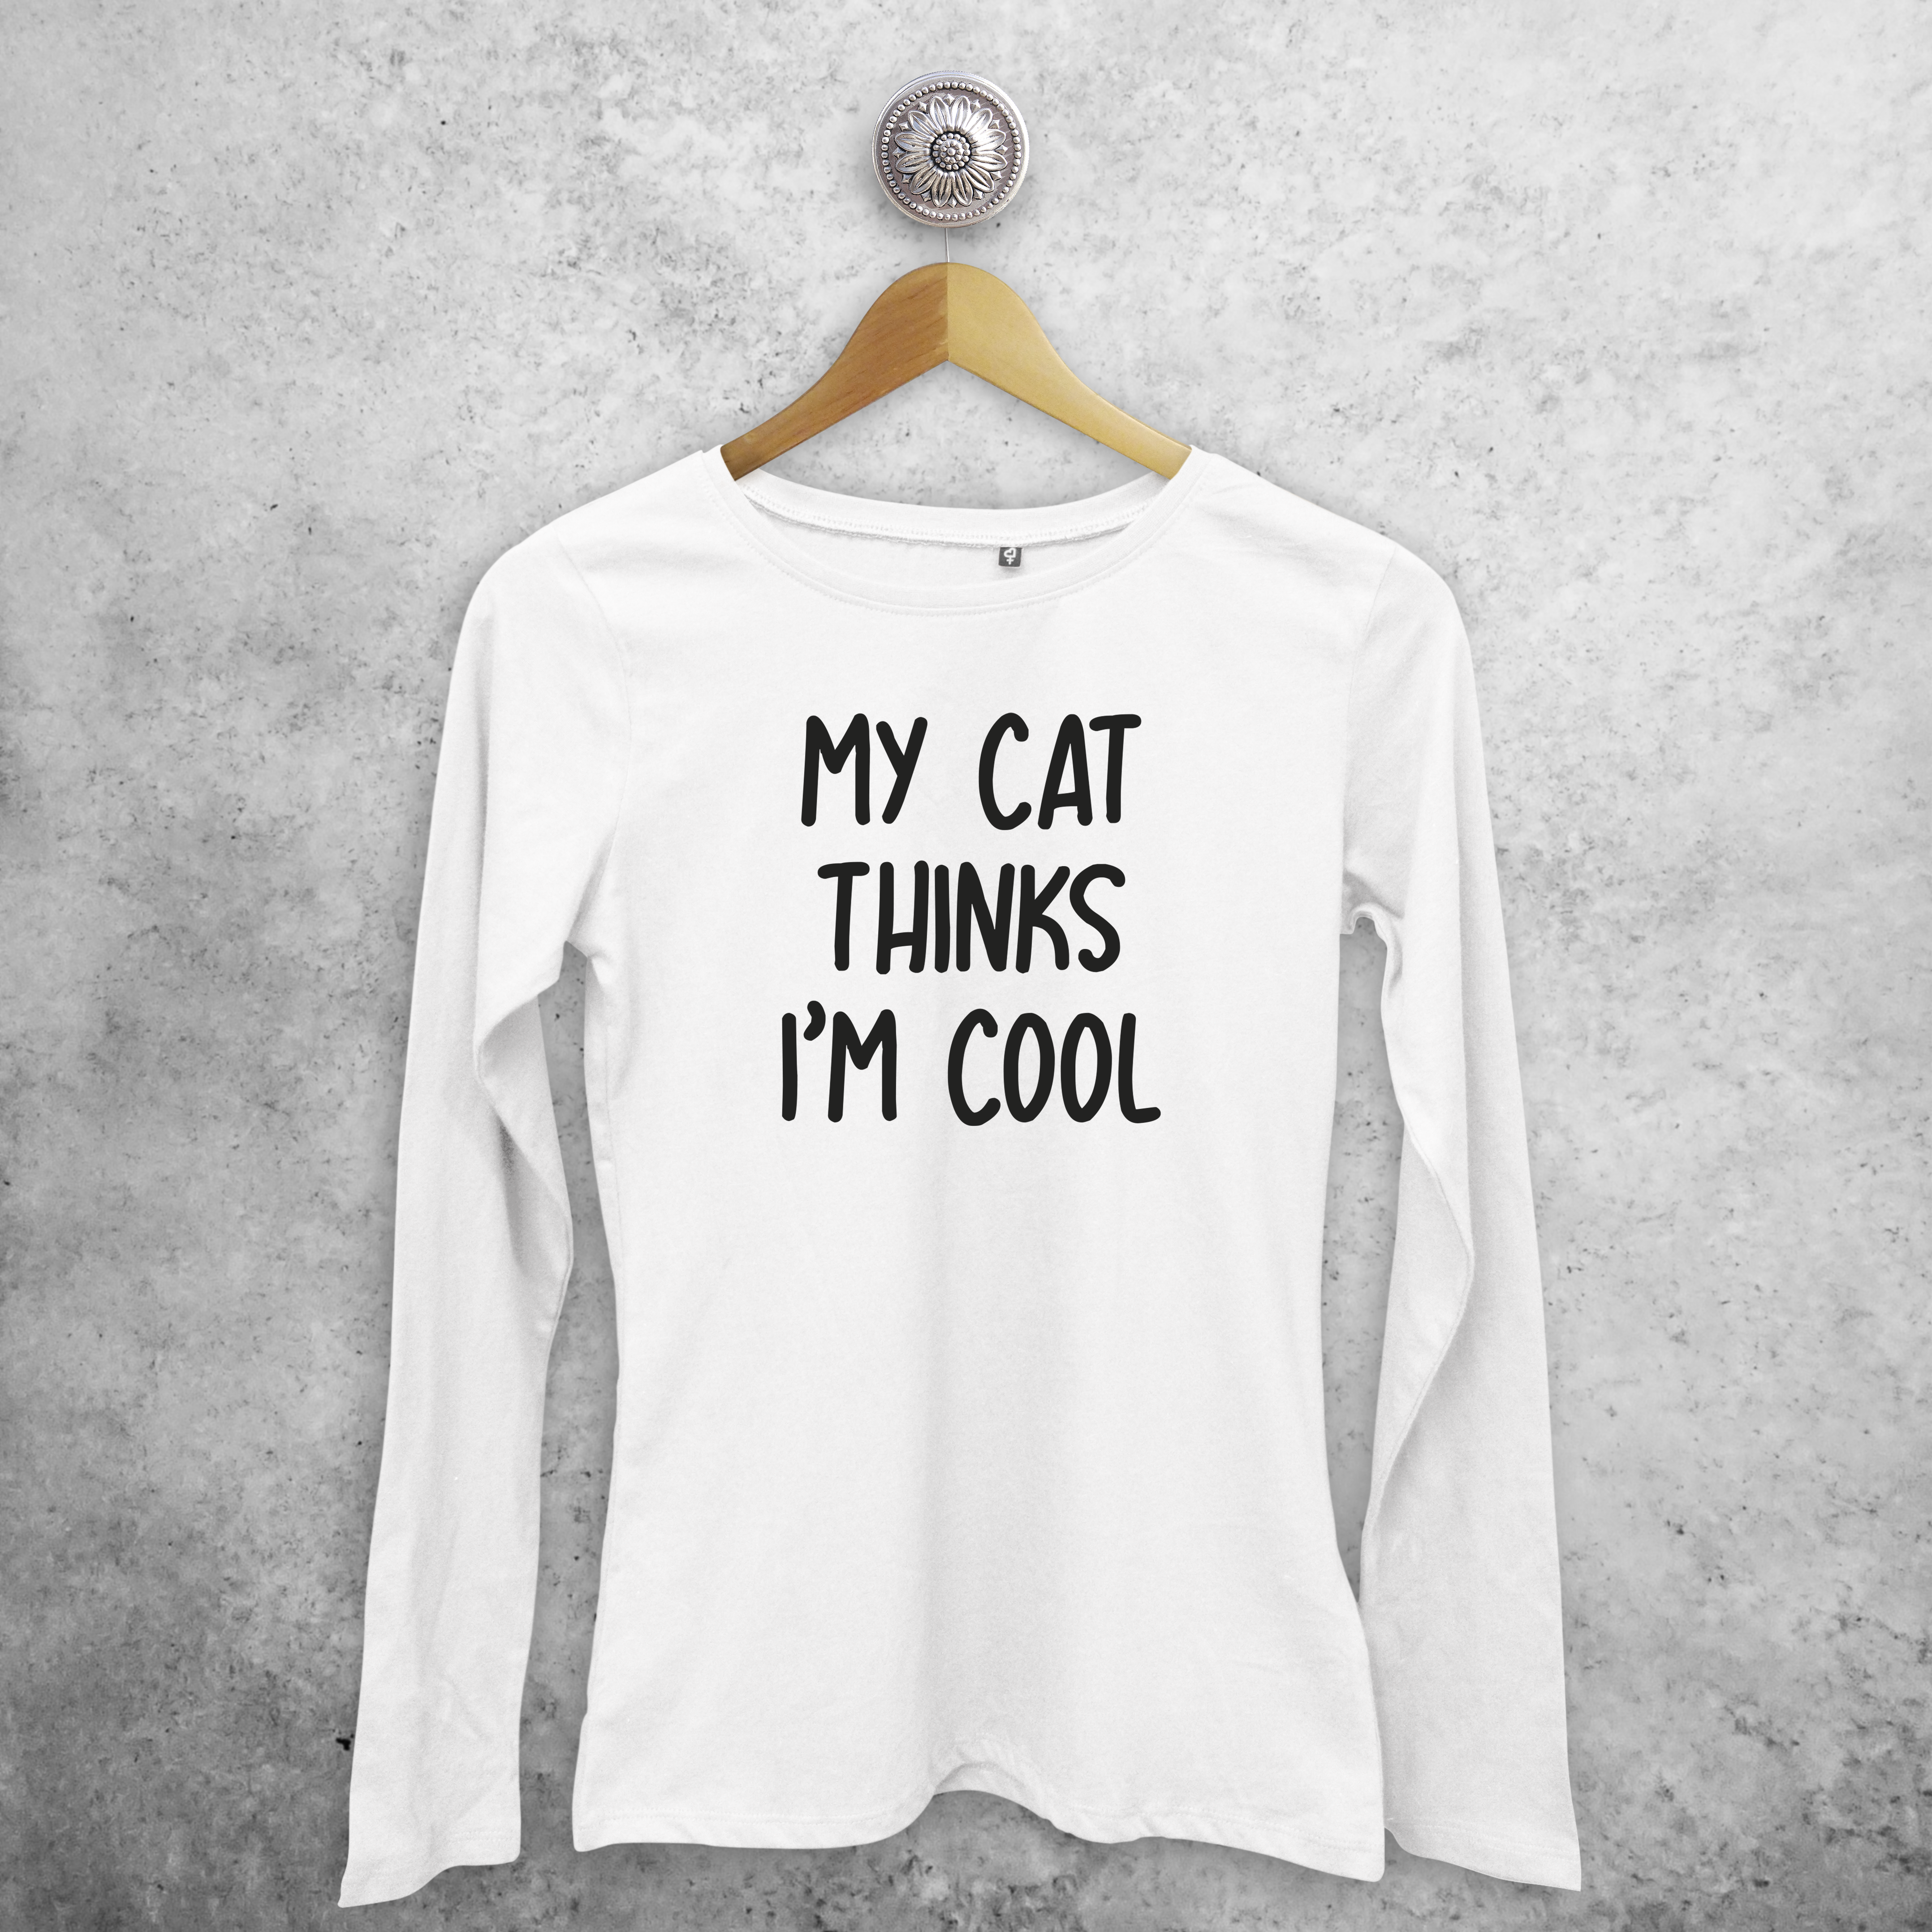 'My cat thinks I'm cool' adult longsleeve shirt